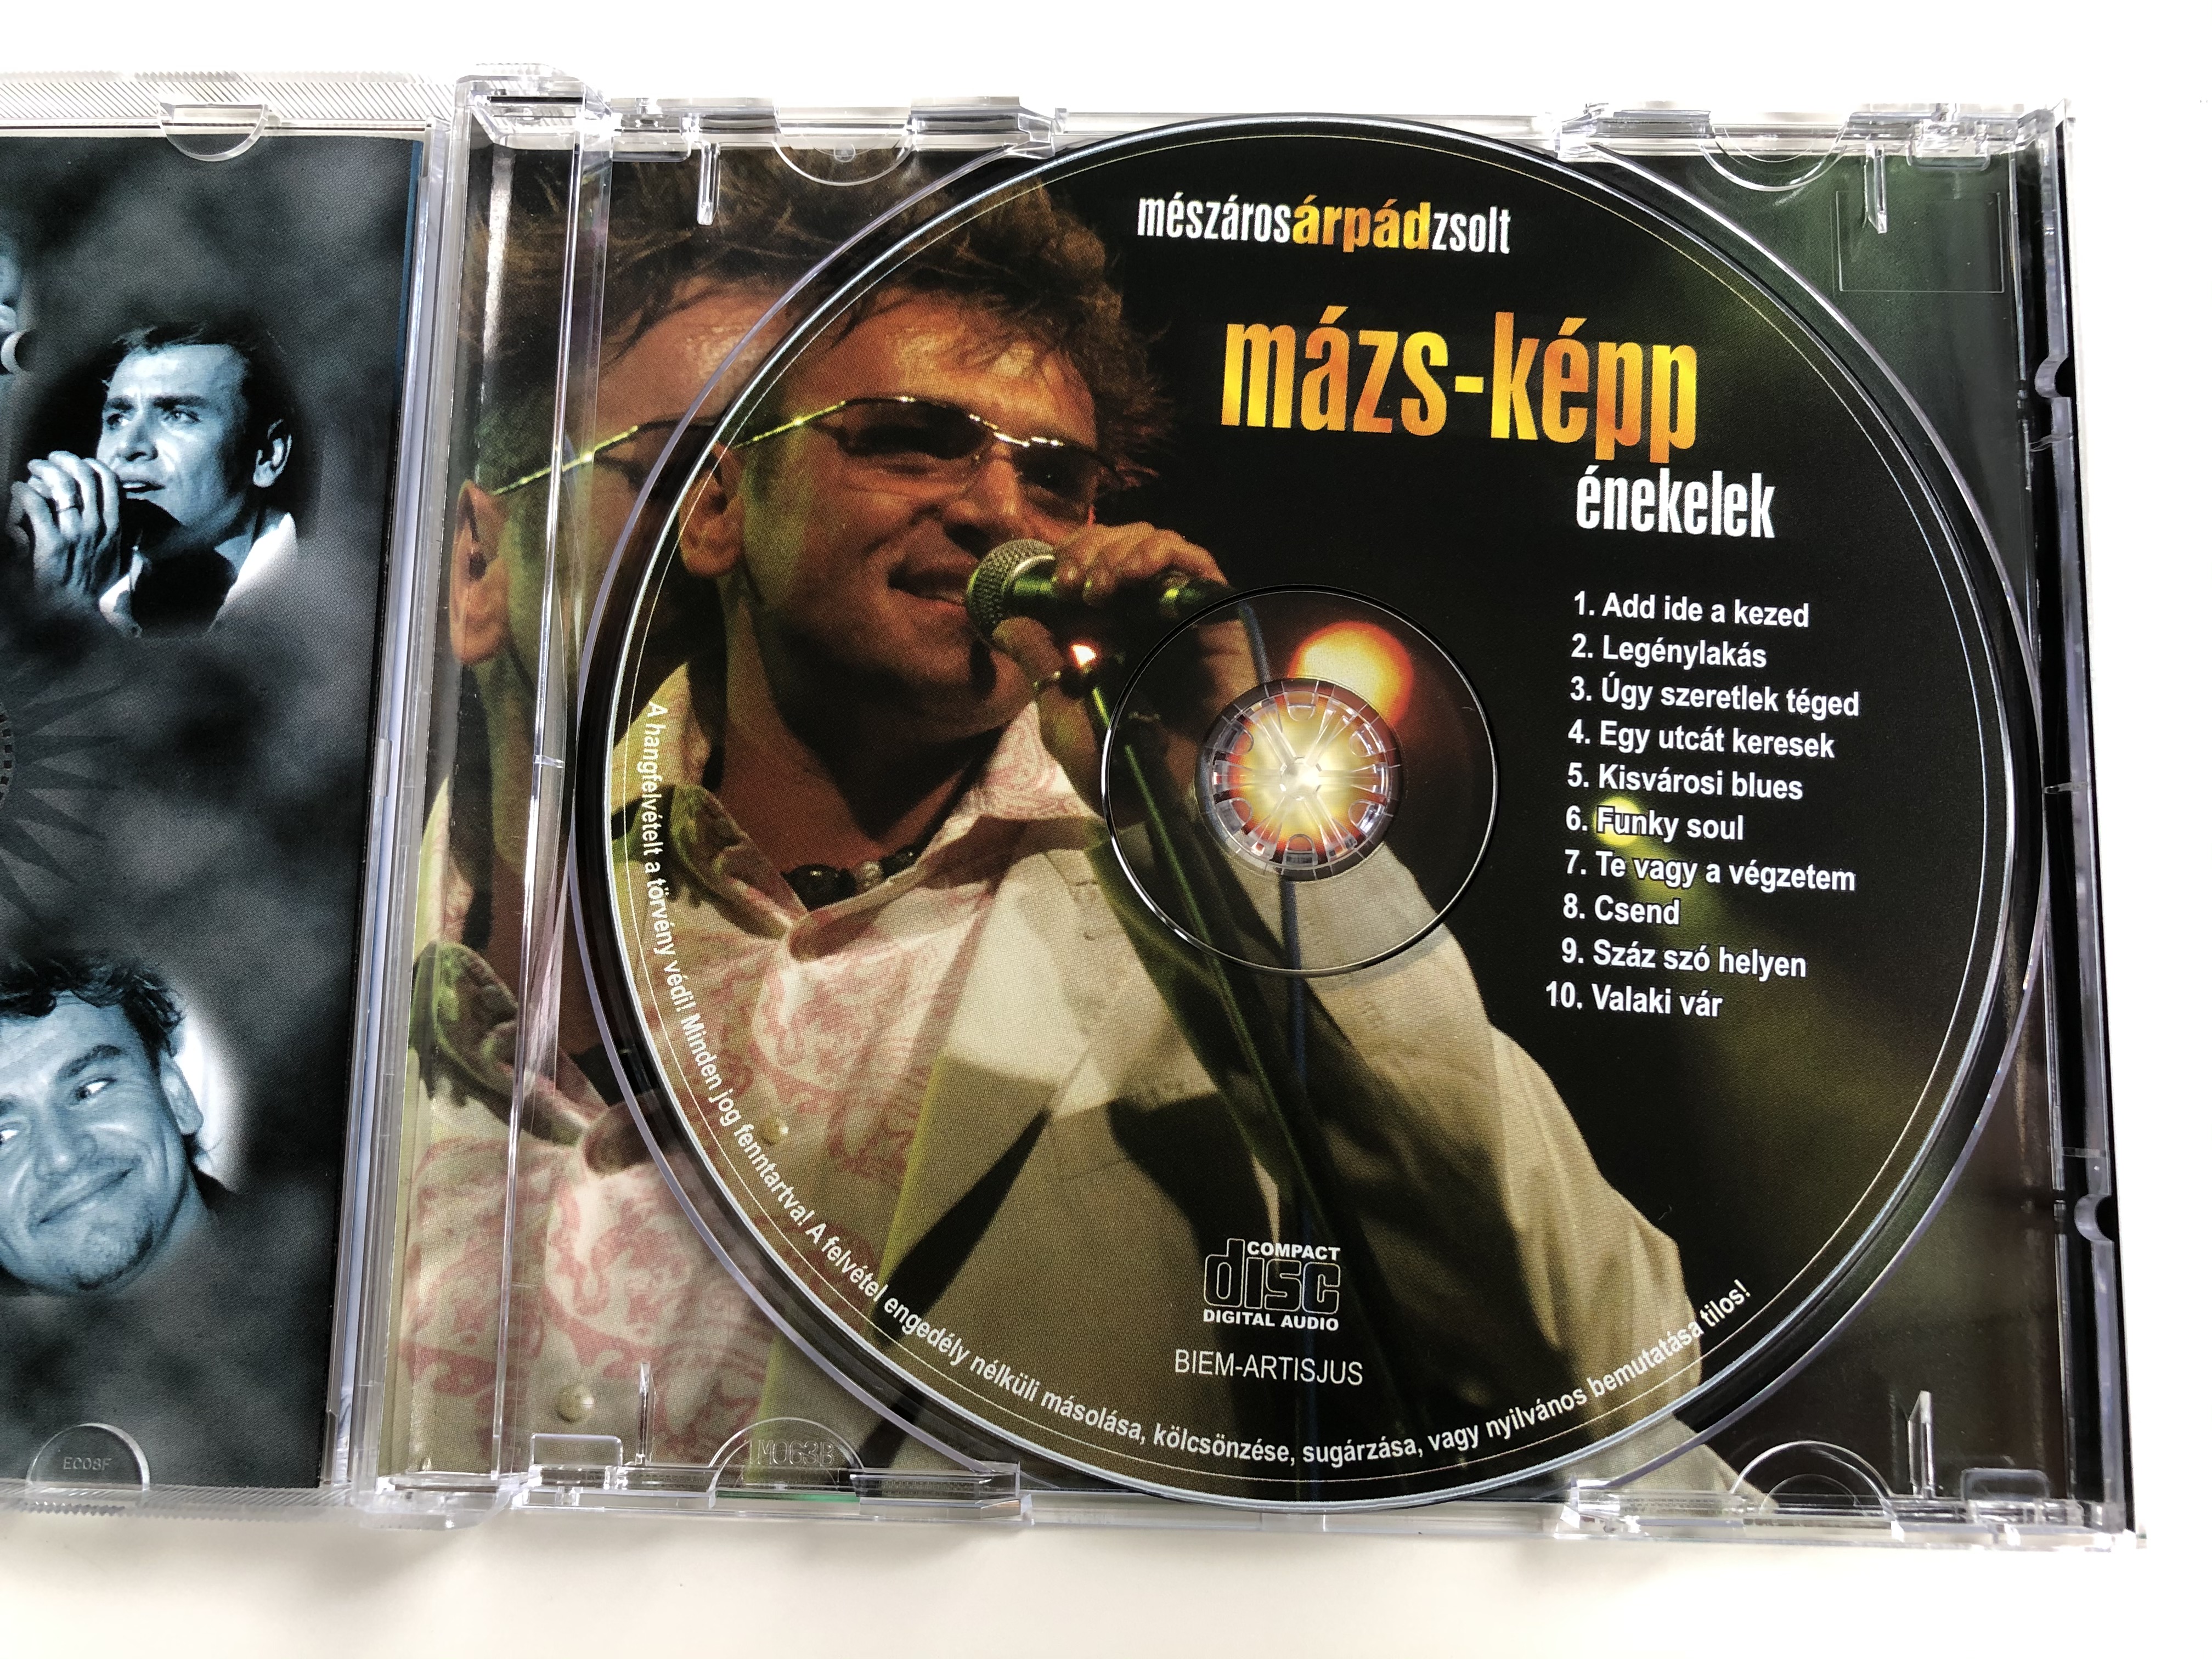 m-sz-ros-rp-d-zsolt-m-zs-k-pp-nekelek-audio-cd-mzs-001-4-.jpg